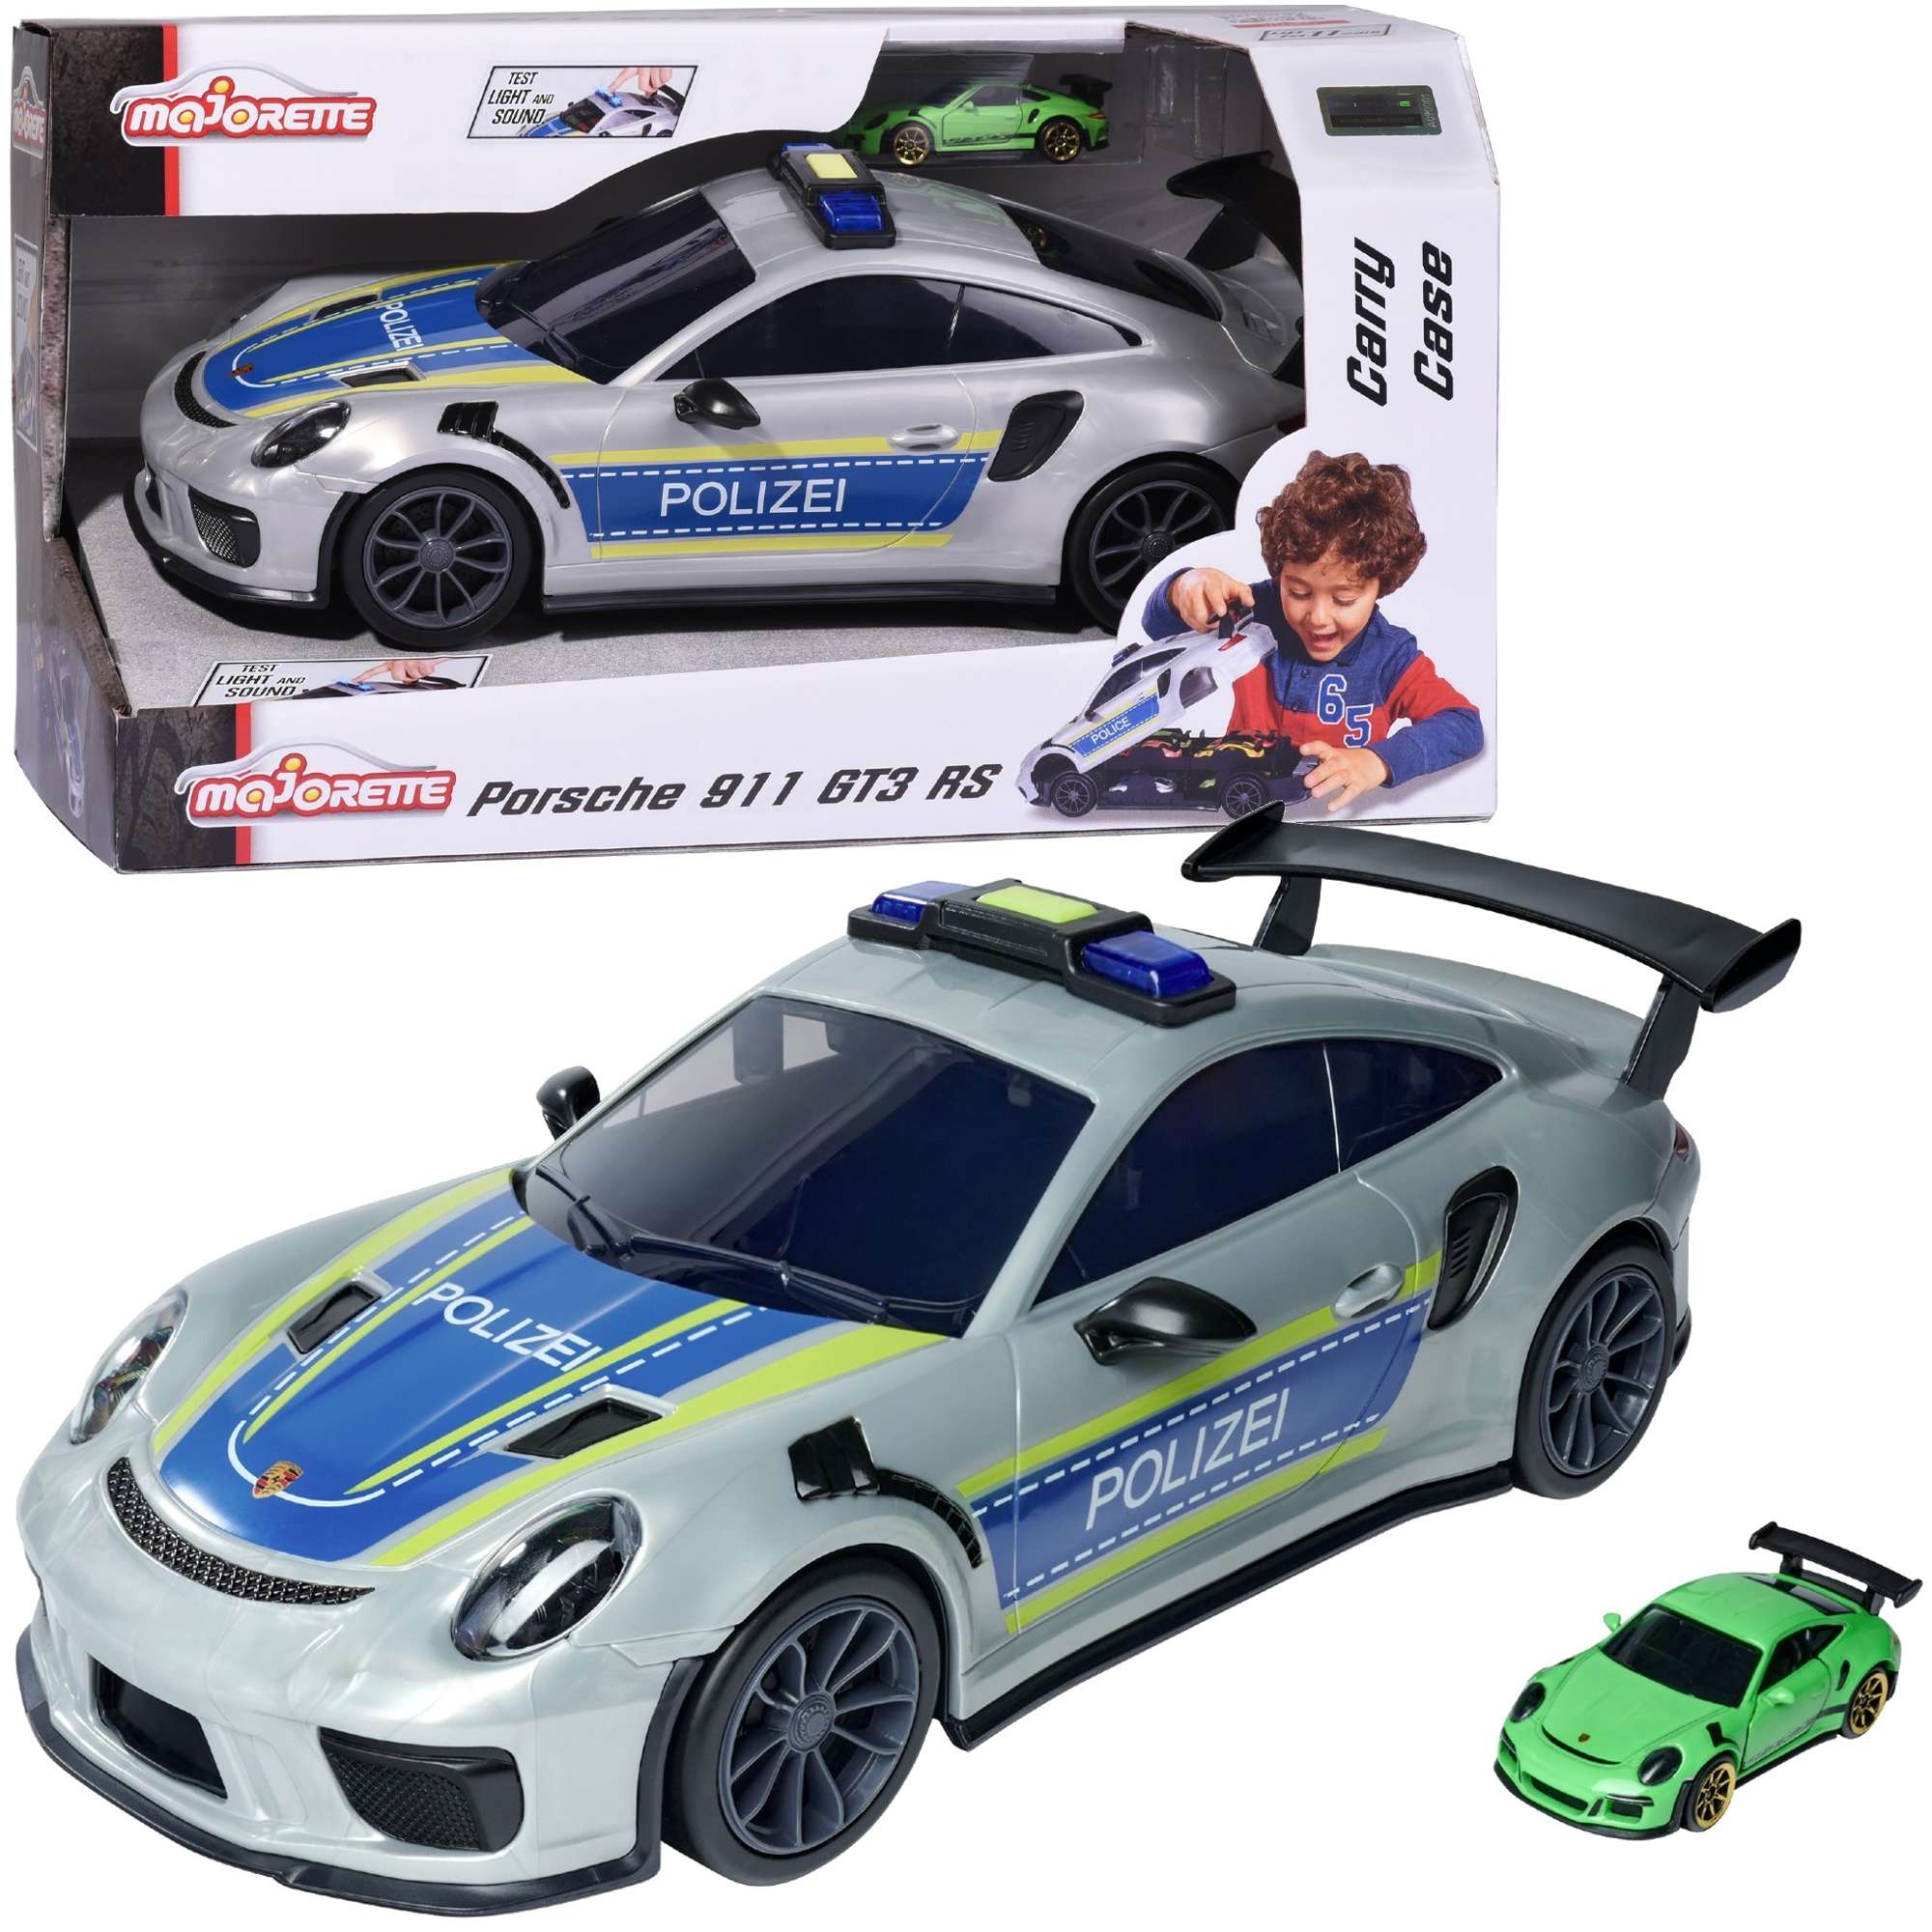 Interaktywny pojazd policyjny Porsche 911 GT3 RS do przechowywania ¶wiat³o/d¼wiêk